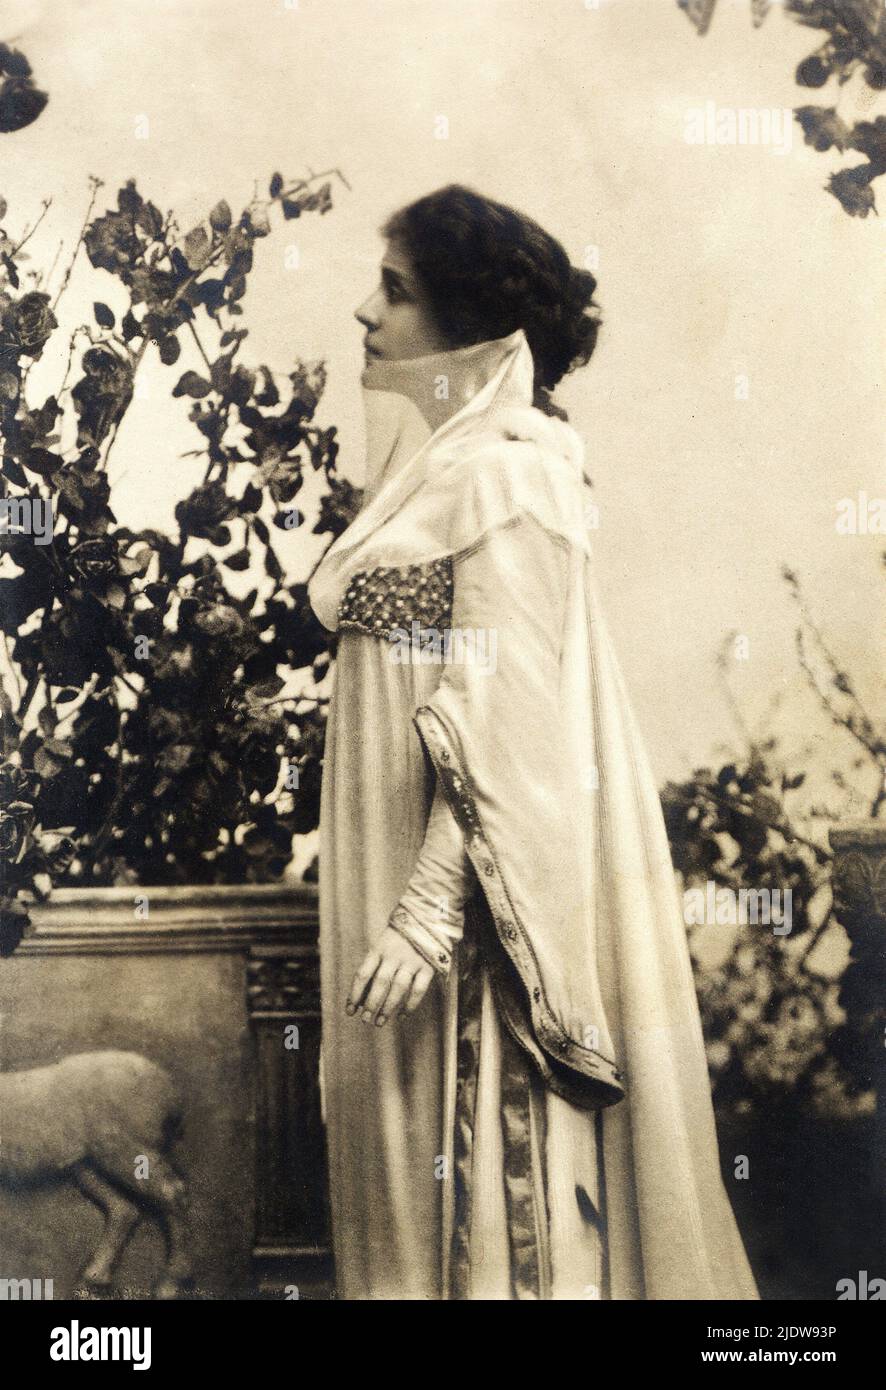 1890 ca., ITALIEN : die berühmteste italienische Schauspielerin ELEONORA DUSE ( 1858 - 1924 ) In DER STADT VON ihrer Geliebten, der DICHTERIN GABRIELE D'ANNUNZIO - THEATER - TEATRO - DANNUNZIO - D' ANNUNZIO - divina - attrice teatrale - profilo - Profil - chignon - velo - Schleier - collo - Hals ---- Archivio GBB Stockfoto